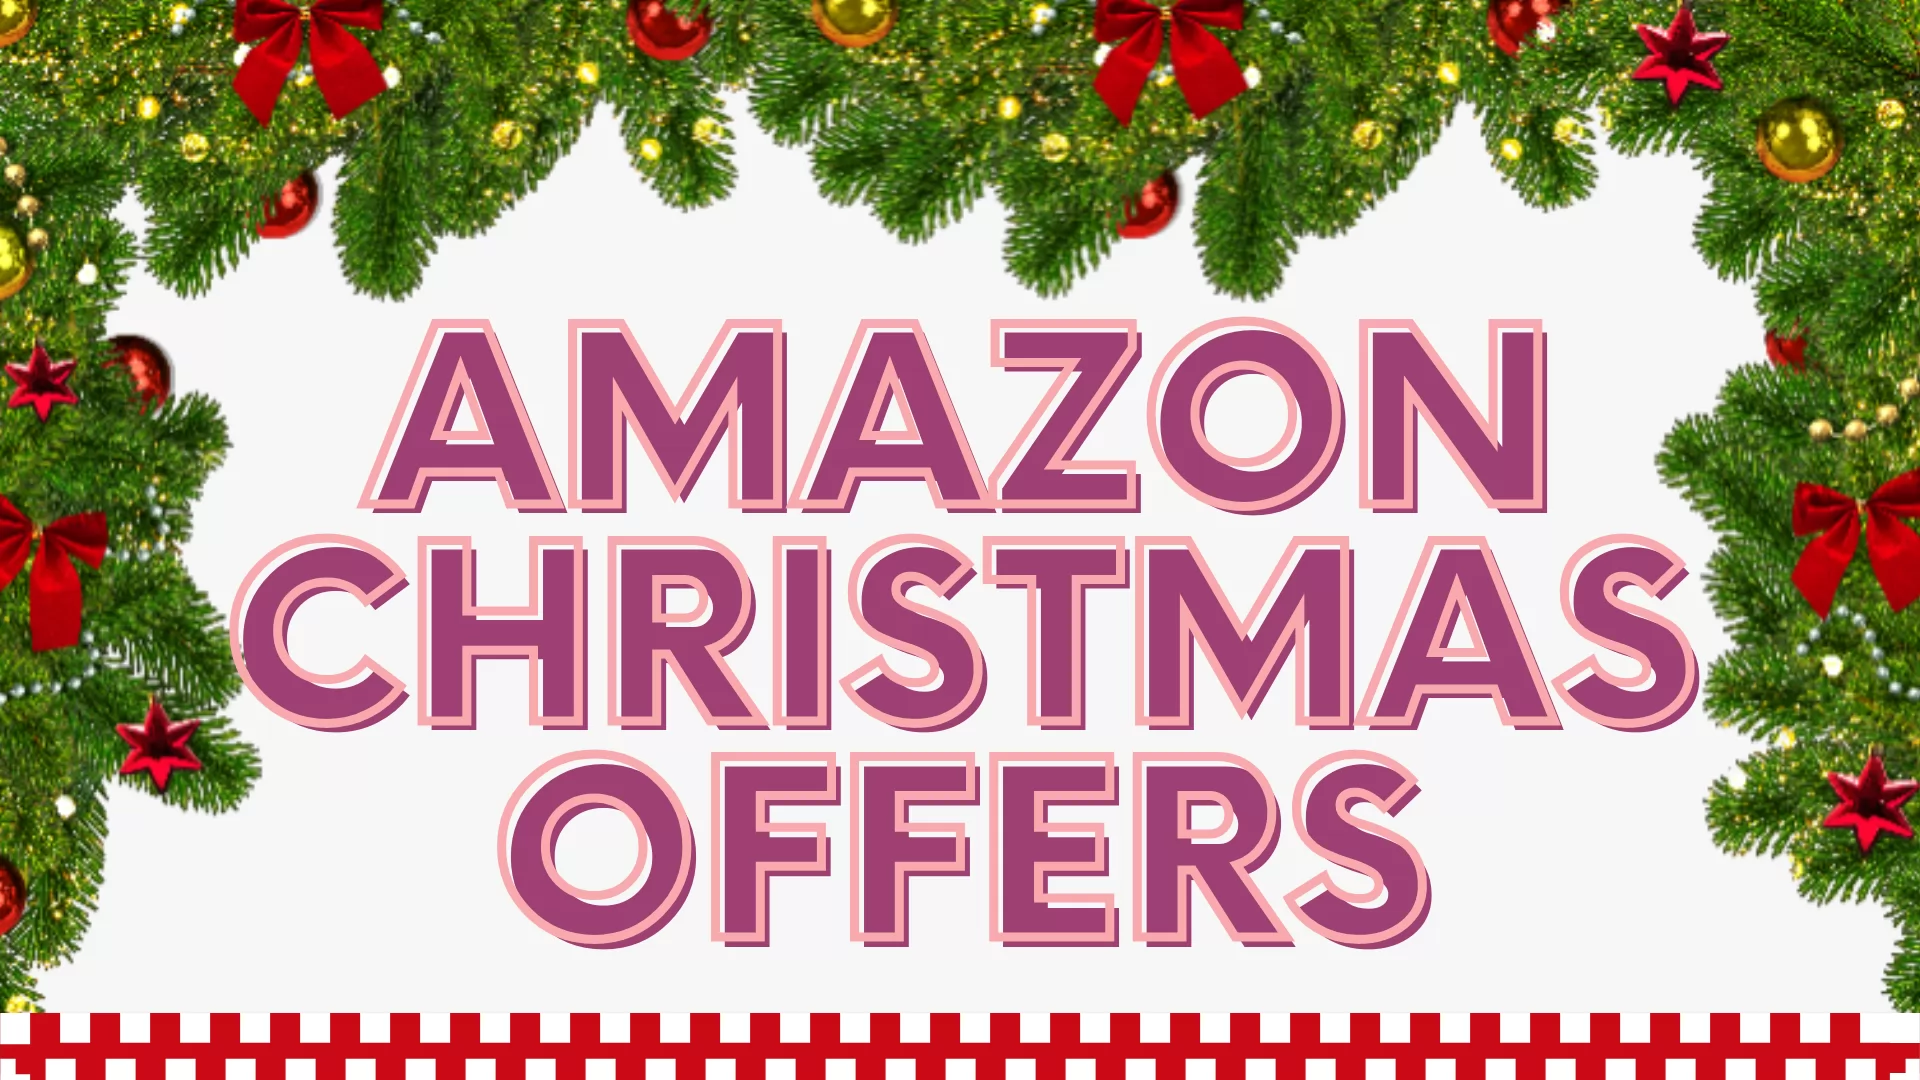 Amazon Christmas Offers